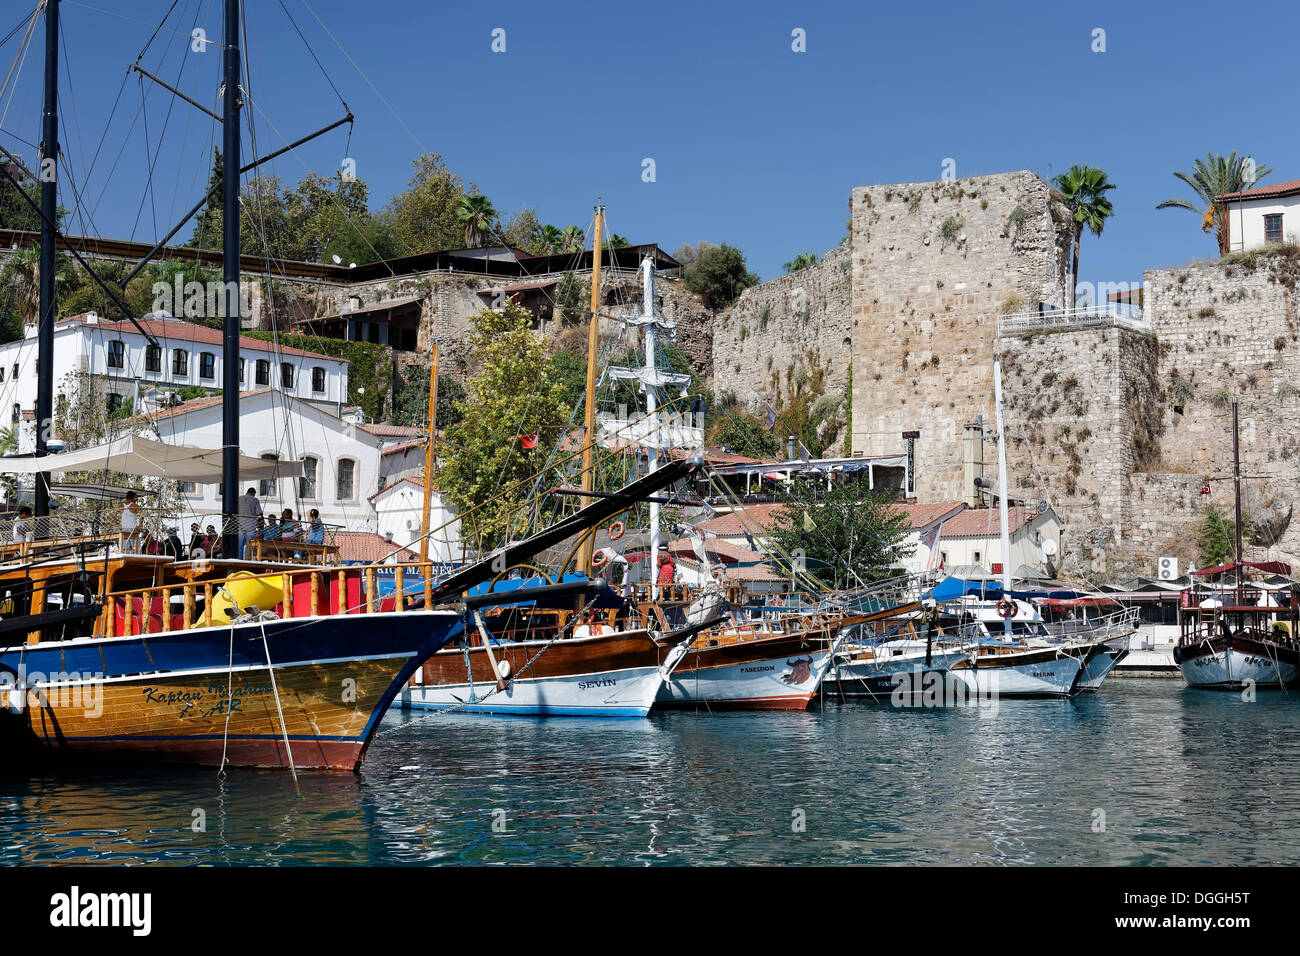 Port dans le centre ville historique d'Antalya, Kaleici, Riviera turque, la Turquie, l'Asie Banque D'Images